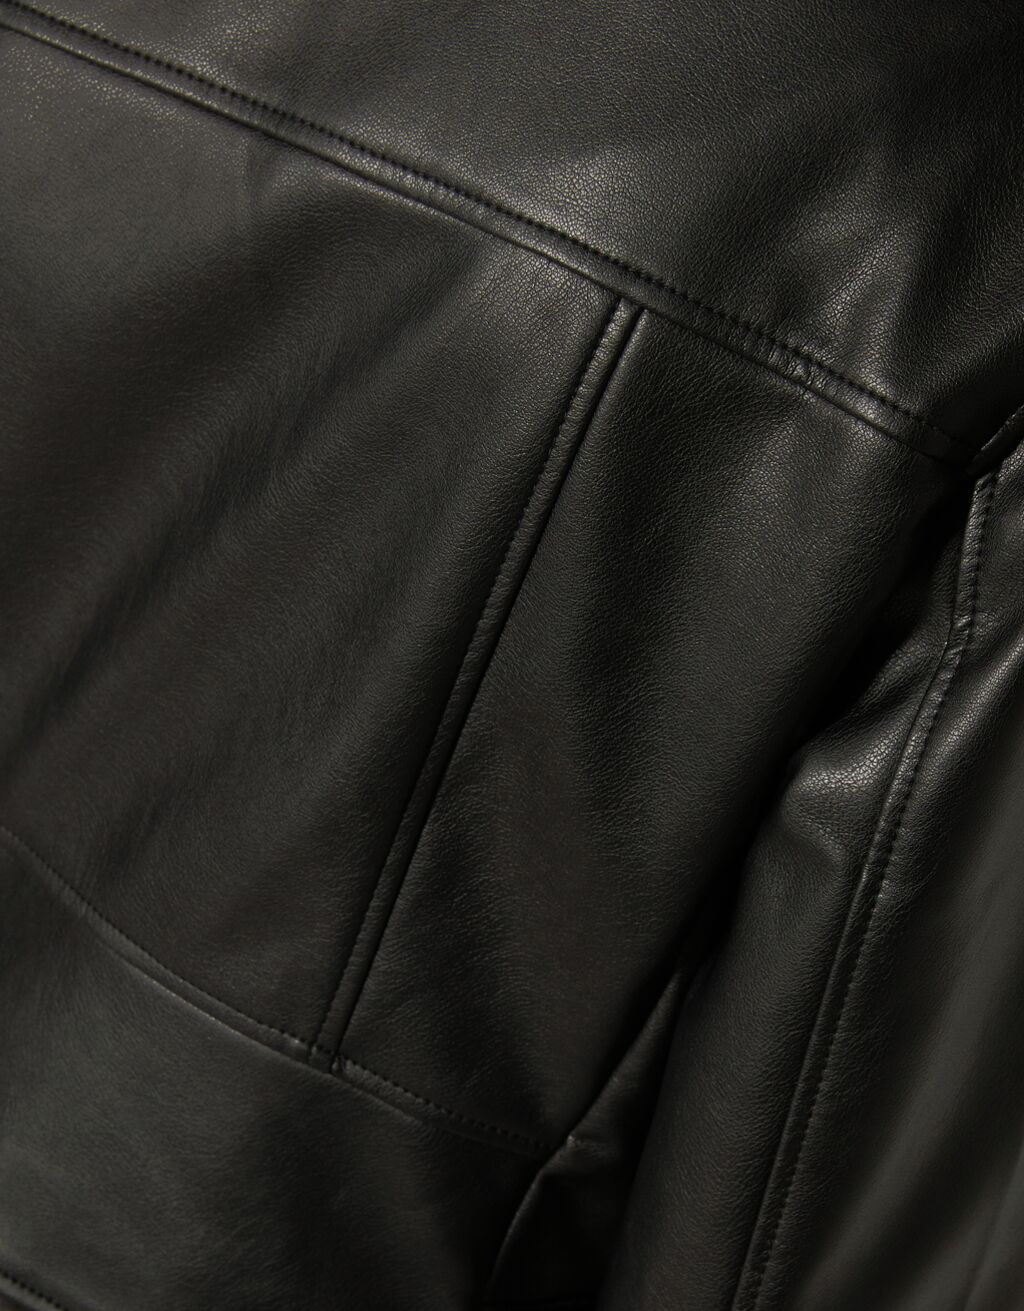 Belted faux leather biker jacket - Woman | Bershka